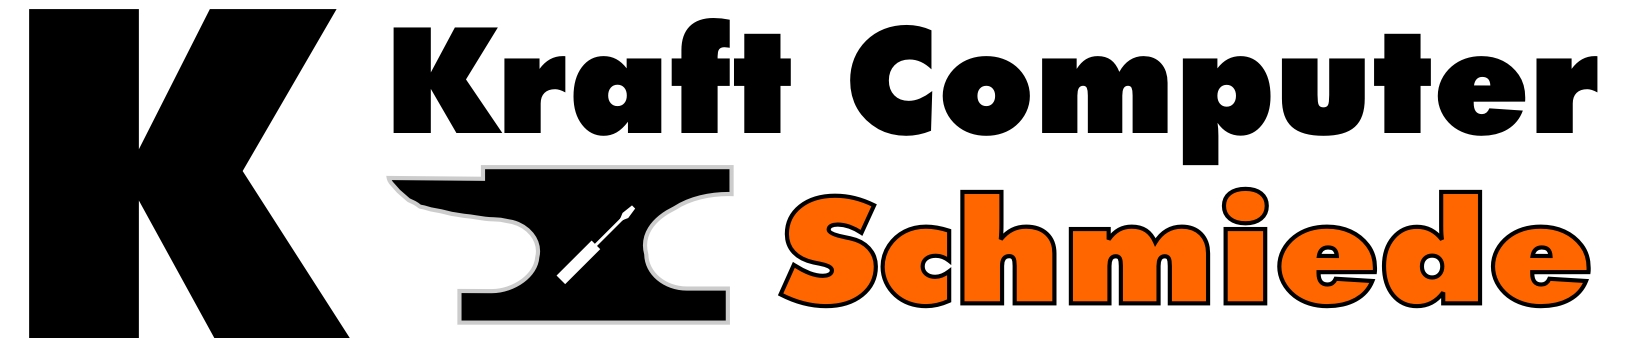 Kraft Computer Schmiede-Logo